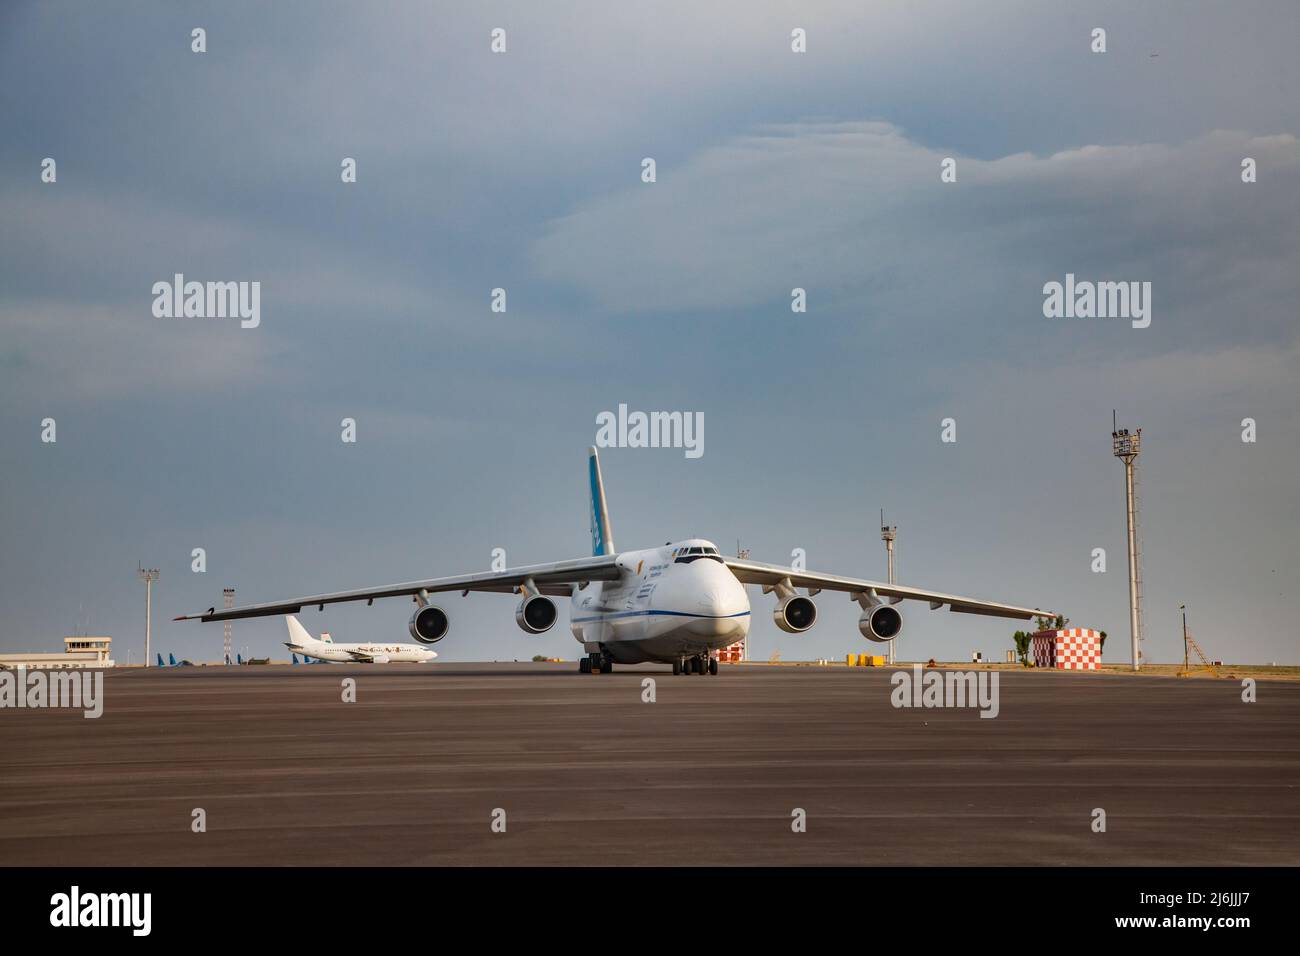 Aktau, Kasachstan - 21. Mai 2012: Internationaler Flughafen Aktau. Großes schweres sowjetisches Frachtflugzeug Antonov-124 Ruslan auf dem Boden. Schöner blauer Himmel mit Klo Stockfoto